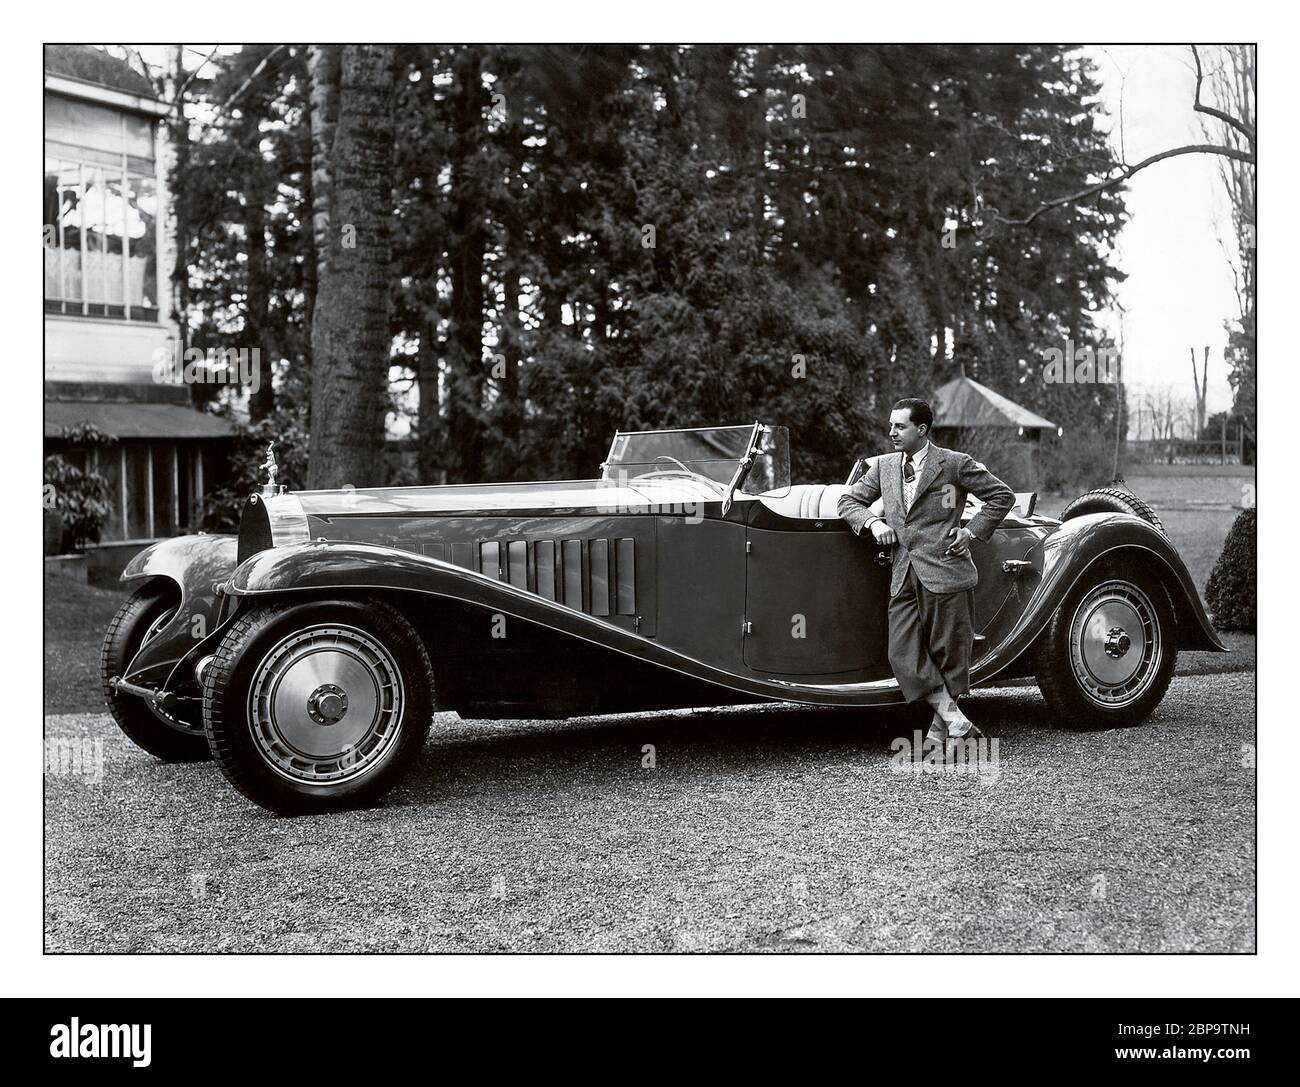 Vintage Bugatti Type 41 Royale Esders Roadster, archive 1927 avec Jean Bugatti debout à côté du Bugatti Type 41, mieux connu sous le nom de Royale, est une grande voiture de luxe construite de 1927 à 1933 avec un empattement de 4.3 m (169.3 in) et une longueur totale de 6.4 m (21 ft). Il pèse environ 3,175 kg (7,000 lb) et utilise un moteur huit cylindres droit de 12.763 litres (778 cu in). La Royale est l'une des plus grandes voitures au monde. Jean Bugatti était un concepteur automobile français et ingénieur de test. Né à Cologne, Gianoberto Maria Carlo Bugatti, il était le fils aîné d'Ettore Bugatti. Banque D'Images